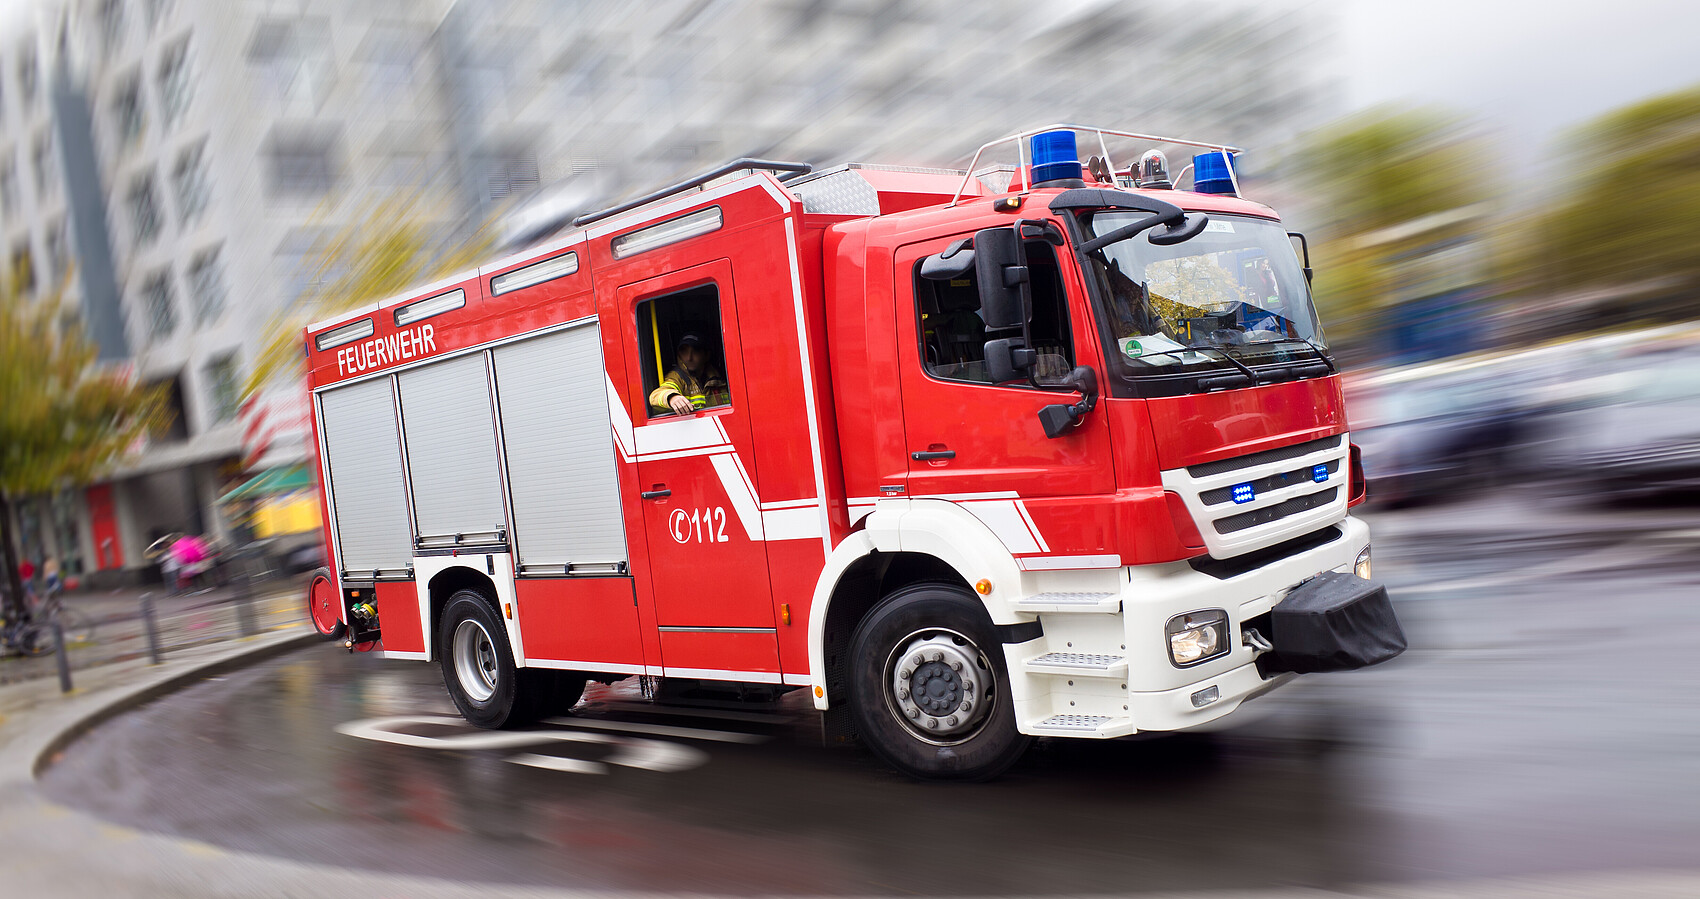 Bild zeigt ein Feuerwehrauto